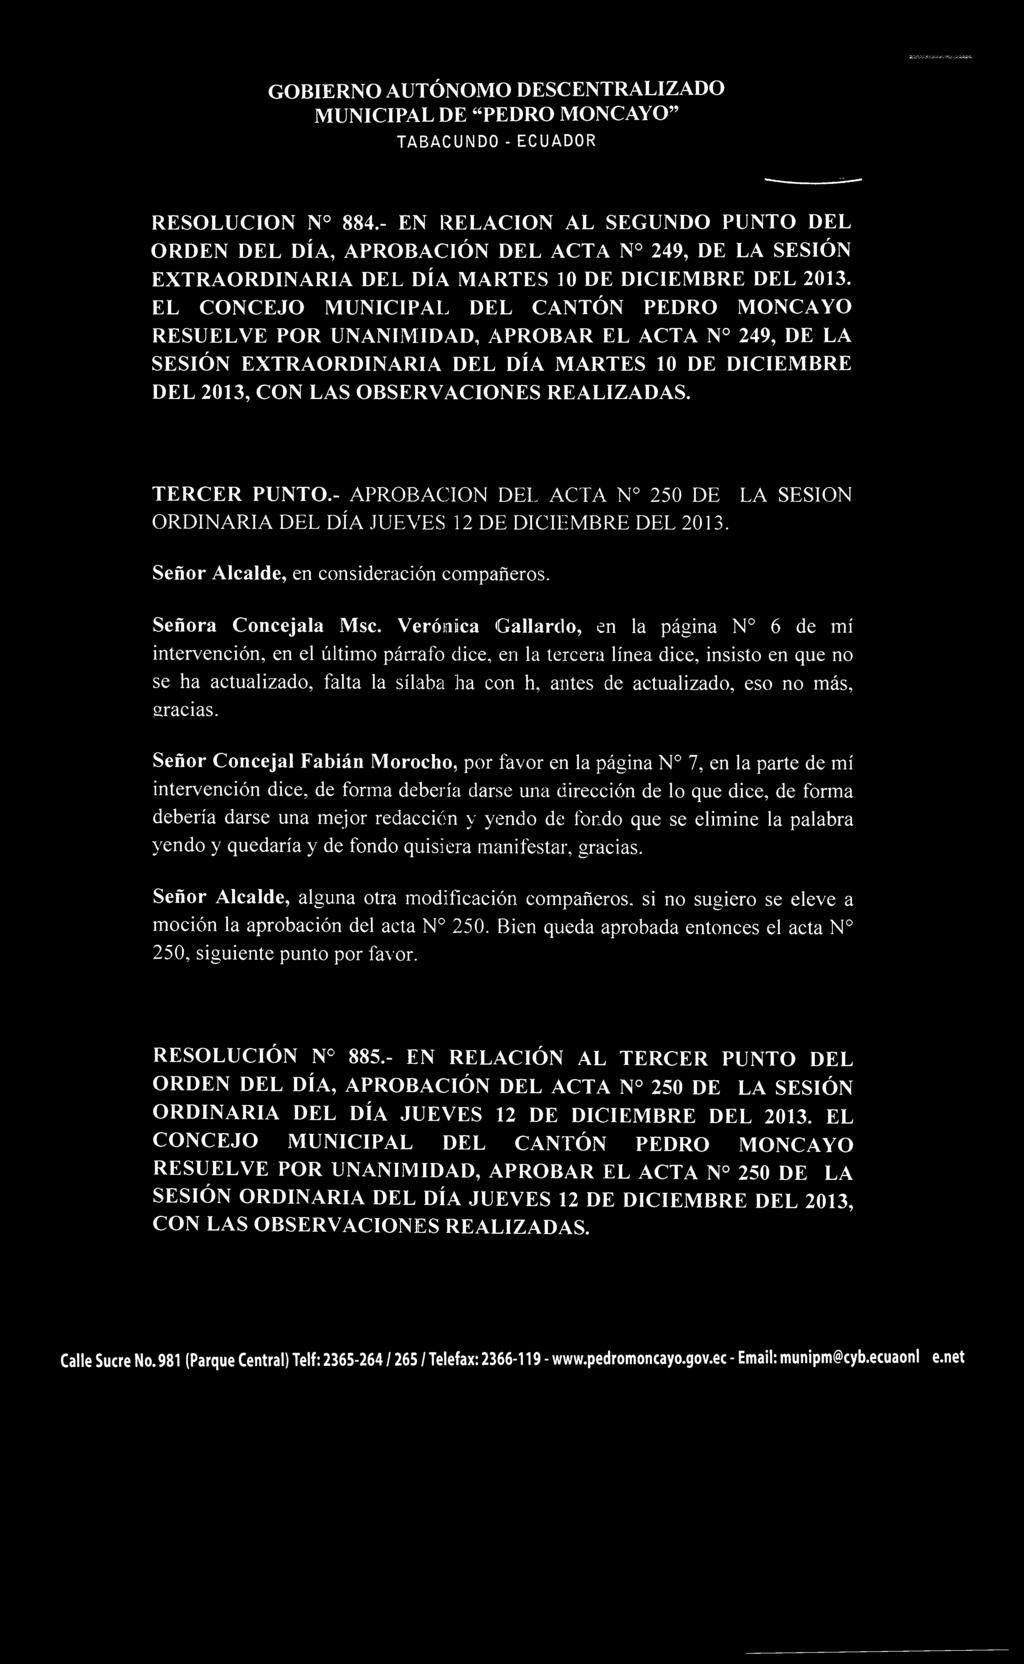 EL CONCEJO MUNICIPAL DEL CANTÓN PEDRO MONCAYO RESUELVE POR UNANIMIDAD, APROBAR EL ACTA N 249, DE LA SESIÓN EXTRAORDINARIA DEL DÍA MARTES 10 DE DICIEMBRE DEL 2013, CON LAS OBSERVACIONES REALIZADAS.